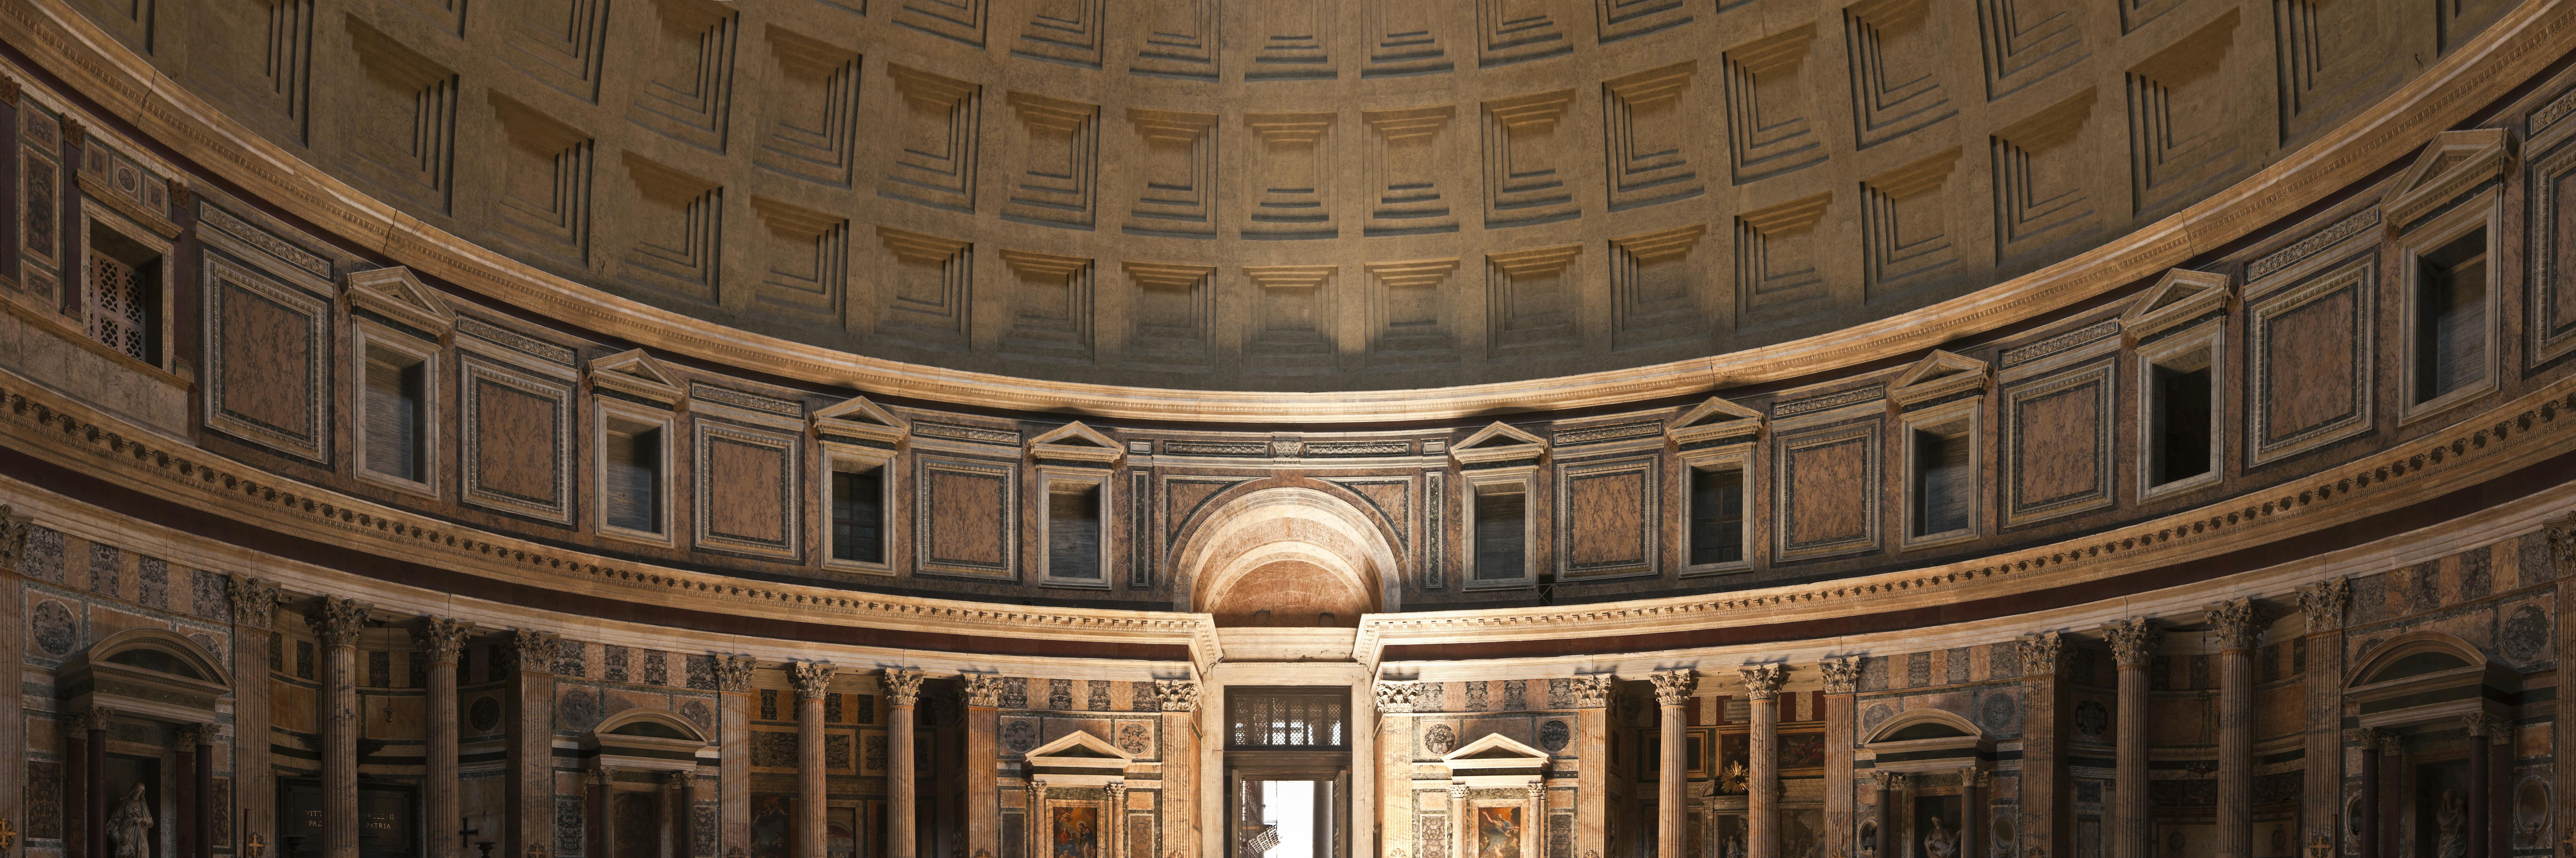 Führung durch das Pantheon